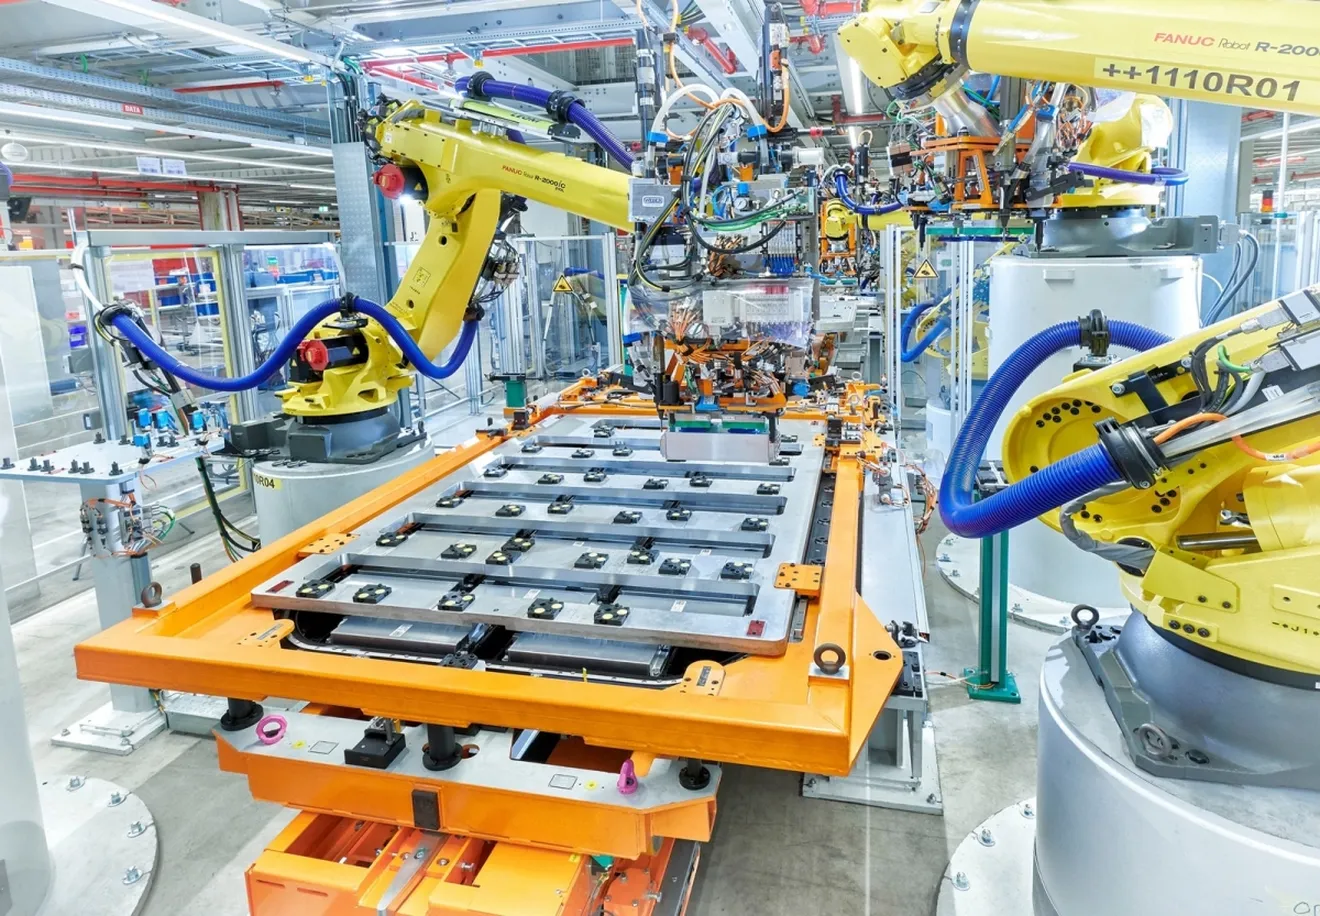 Reciclaje de baterías de coche eléctrico robotizado: así es la iniciativa pionera en Europa